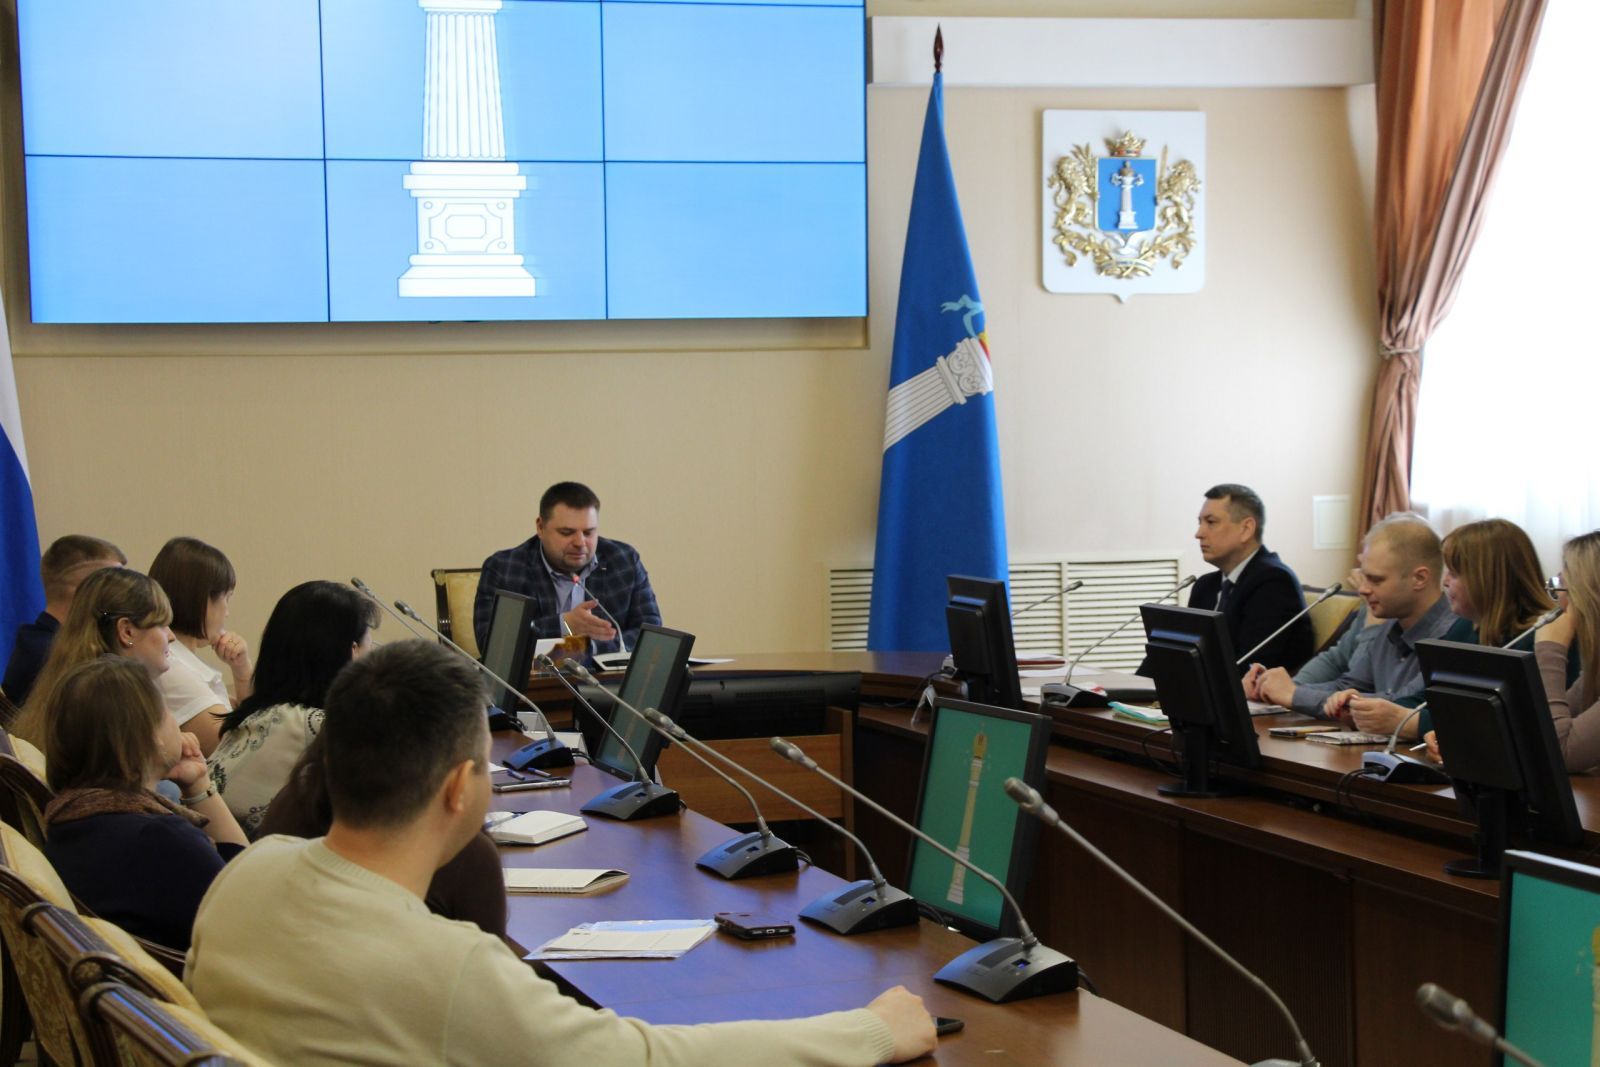 Прозрачность, компетенции и поддержка экспертов.   В Ульяновске прошёл семинар по формированию навыков проведения антикоррупционной экспертизы нормативных правовых актов и их проектов